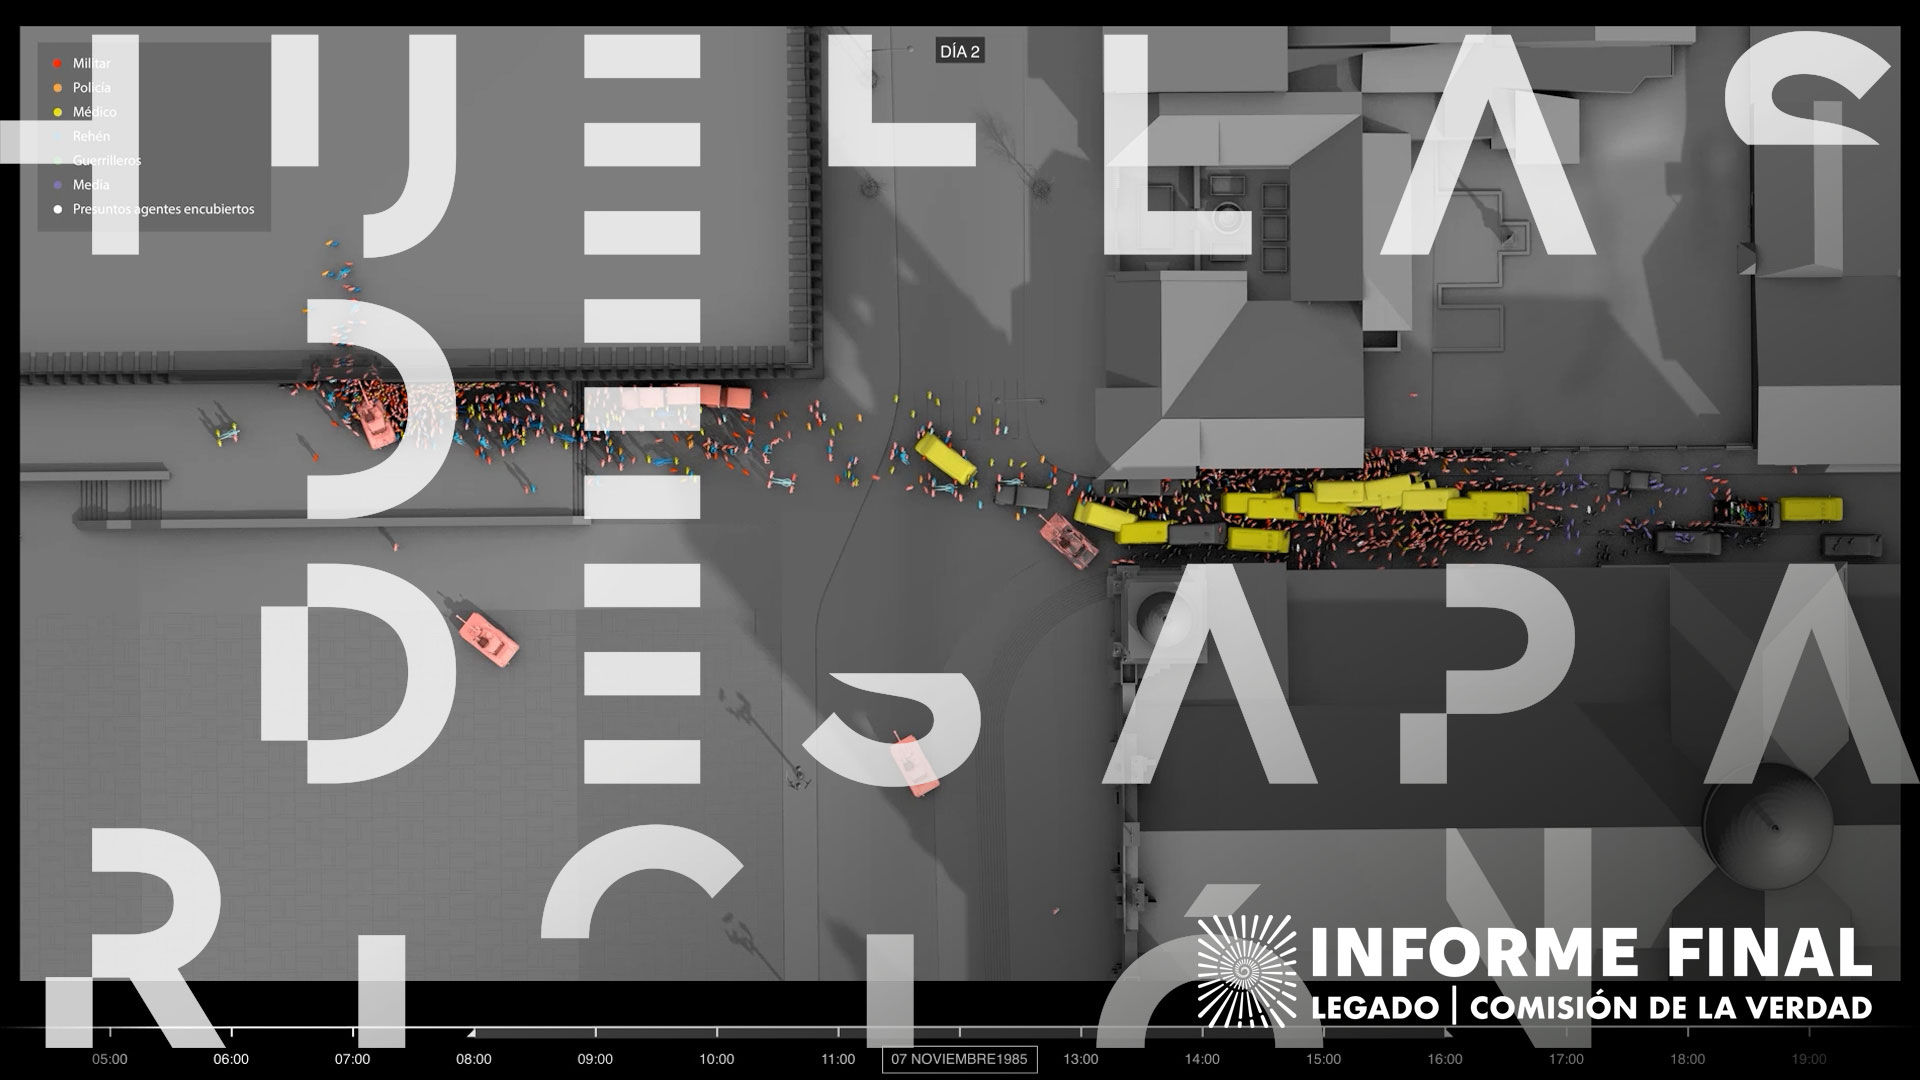 Vista aérea 3D con calles, techos de edificios, vehículos y personas. Diseño de texto “HUELLAS DE DESAPARICIÓN” 